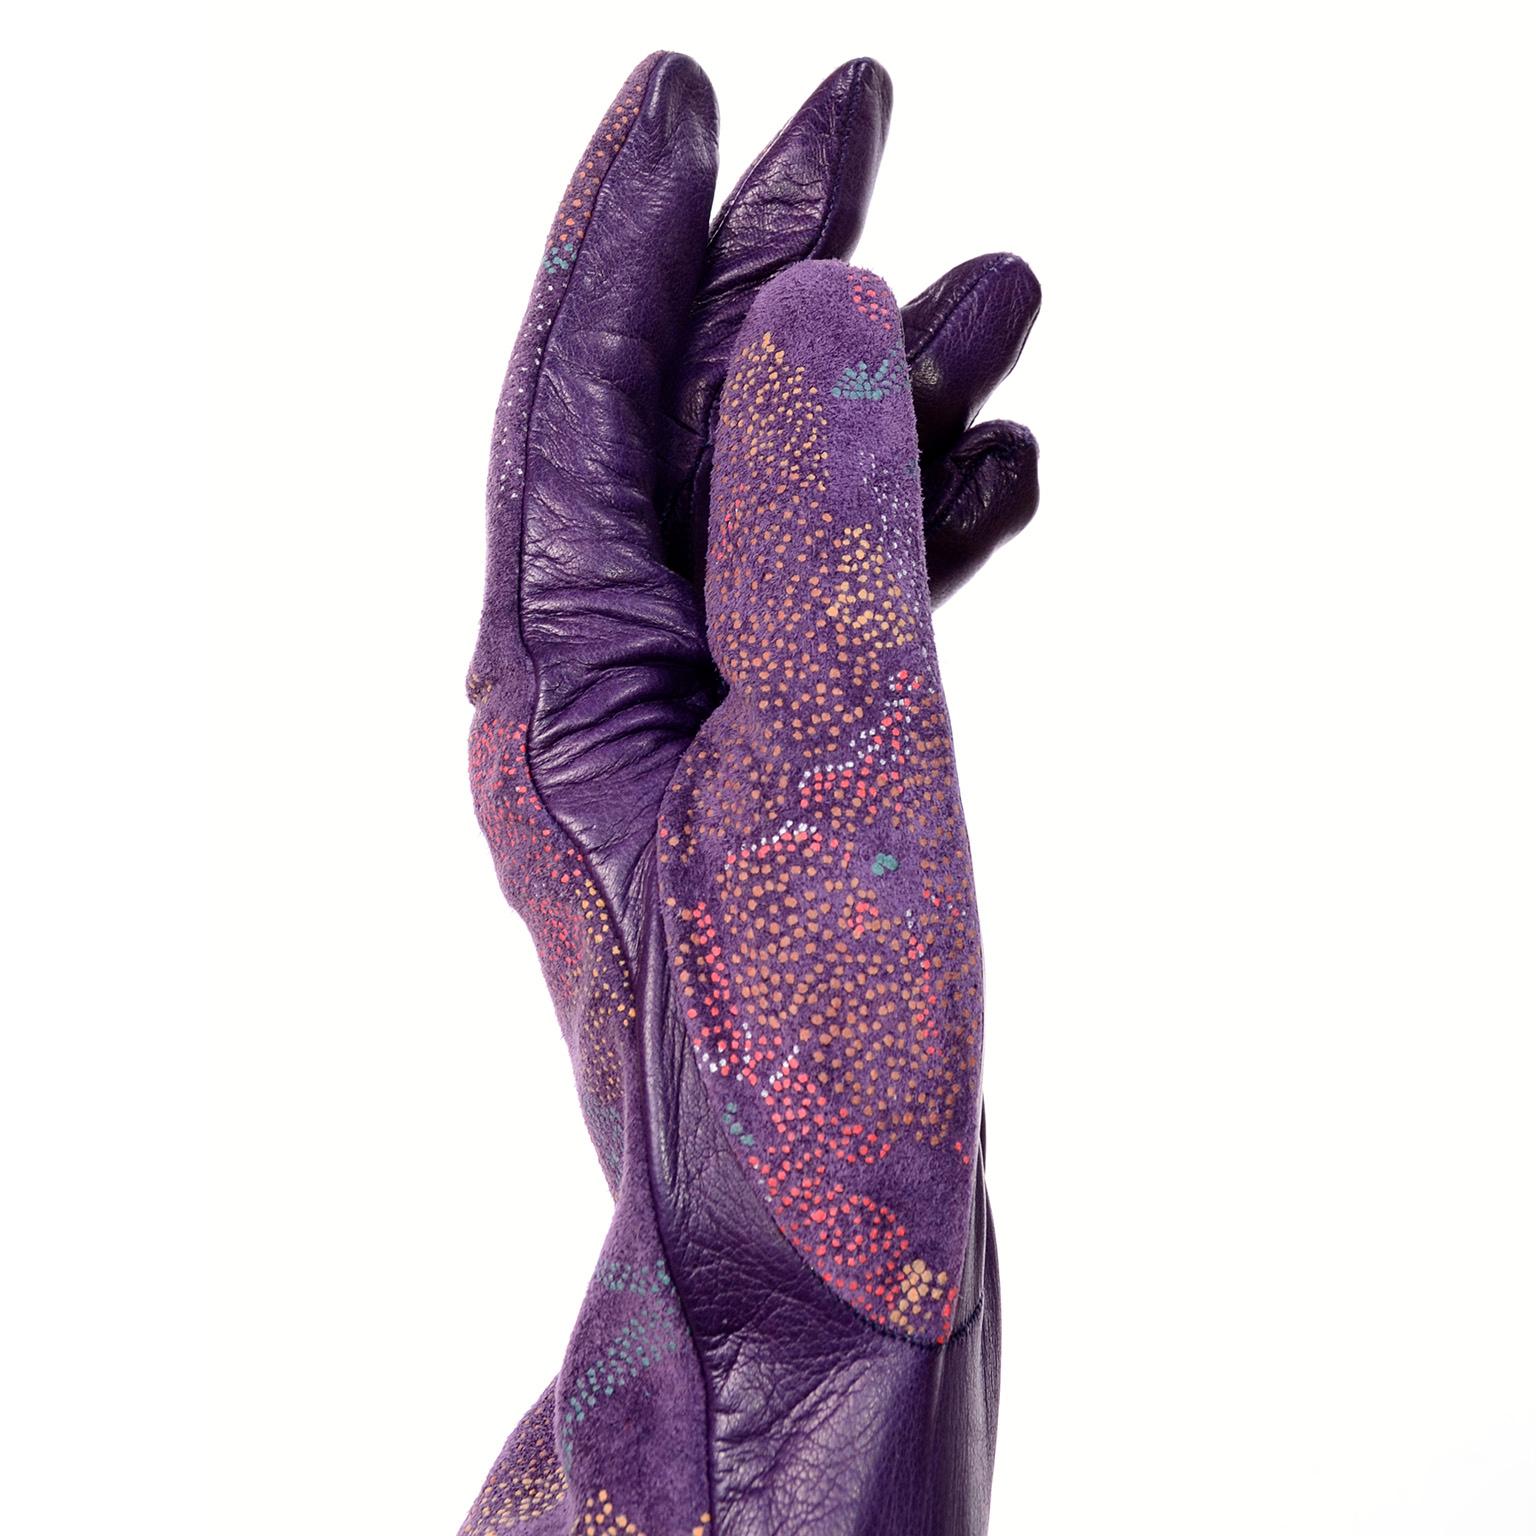 Diese atemberaubenden Vintage-Lederhandschuhe wurden von Carlos Falchi entworfen und in Italien hergestellt. Die Handschuhe sind aus lila Leder mit handgemalten Blumen im Pointillismus-Stil in Lila, Rot, Gelb, Weiß und Blau auf der Oberseite. Diese